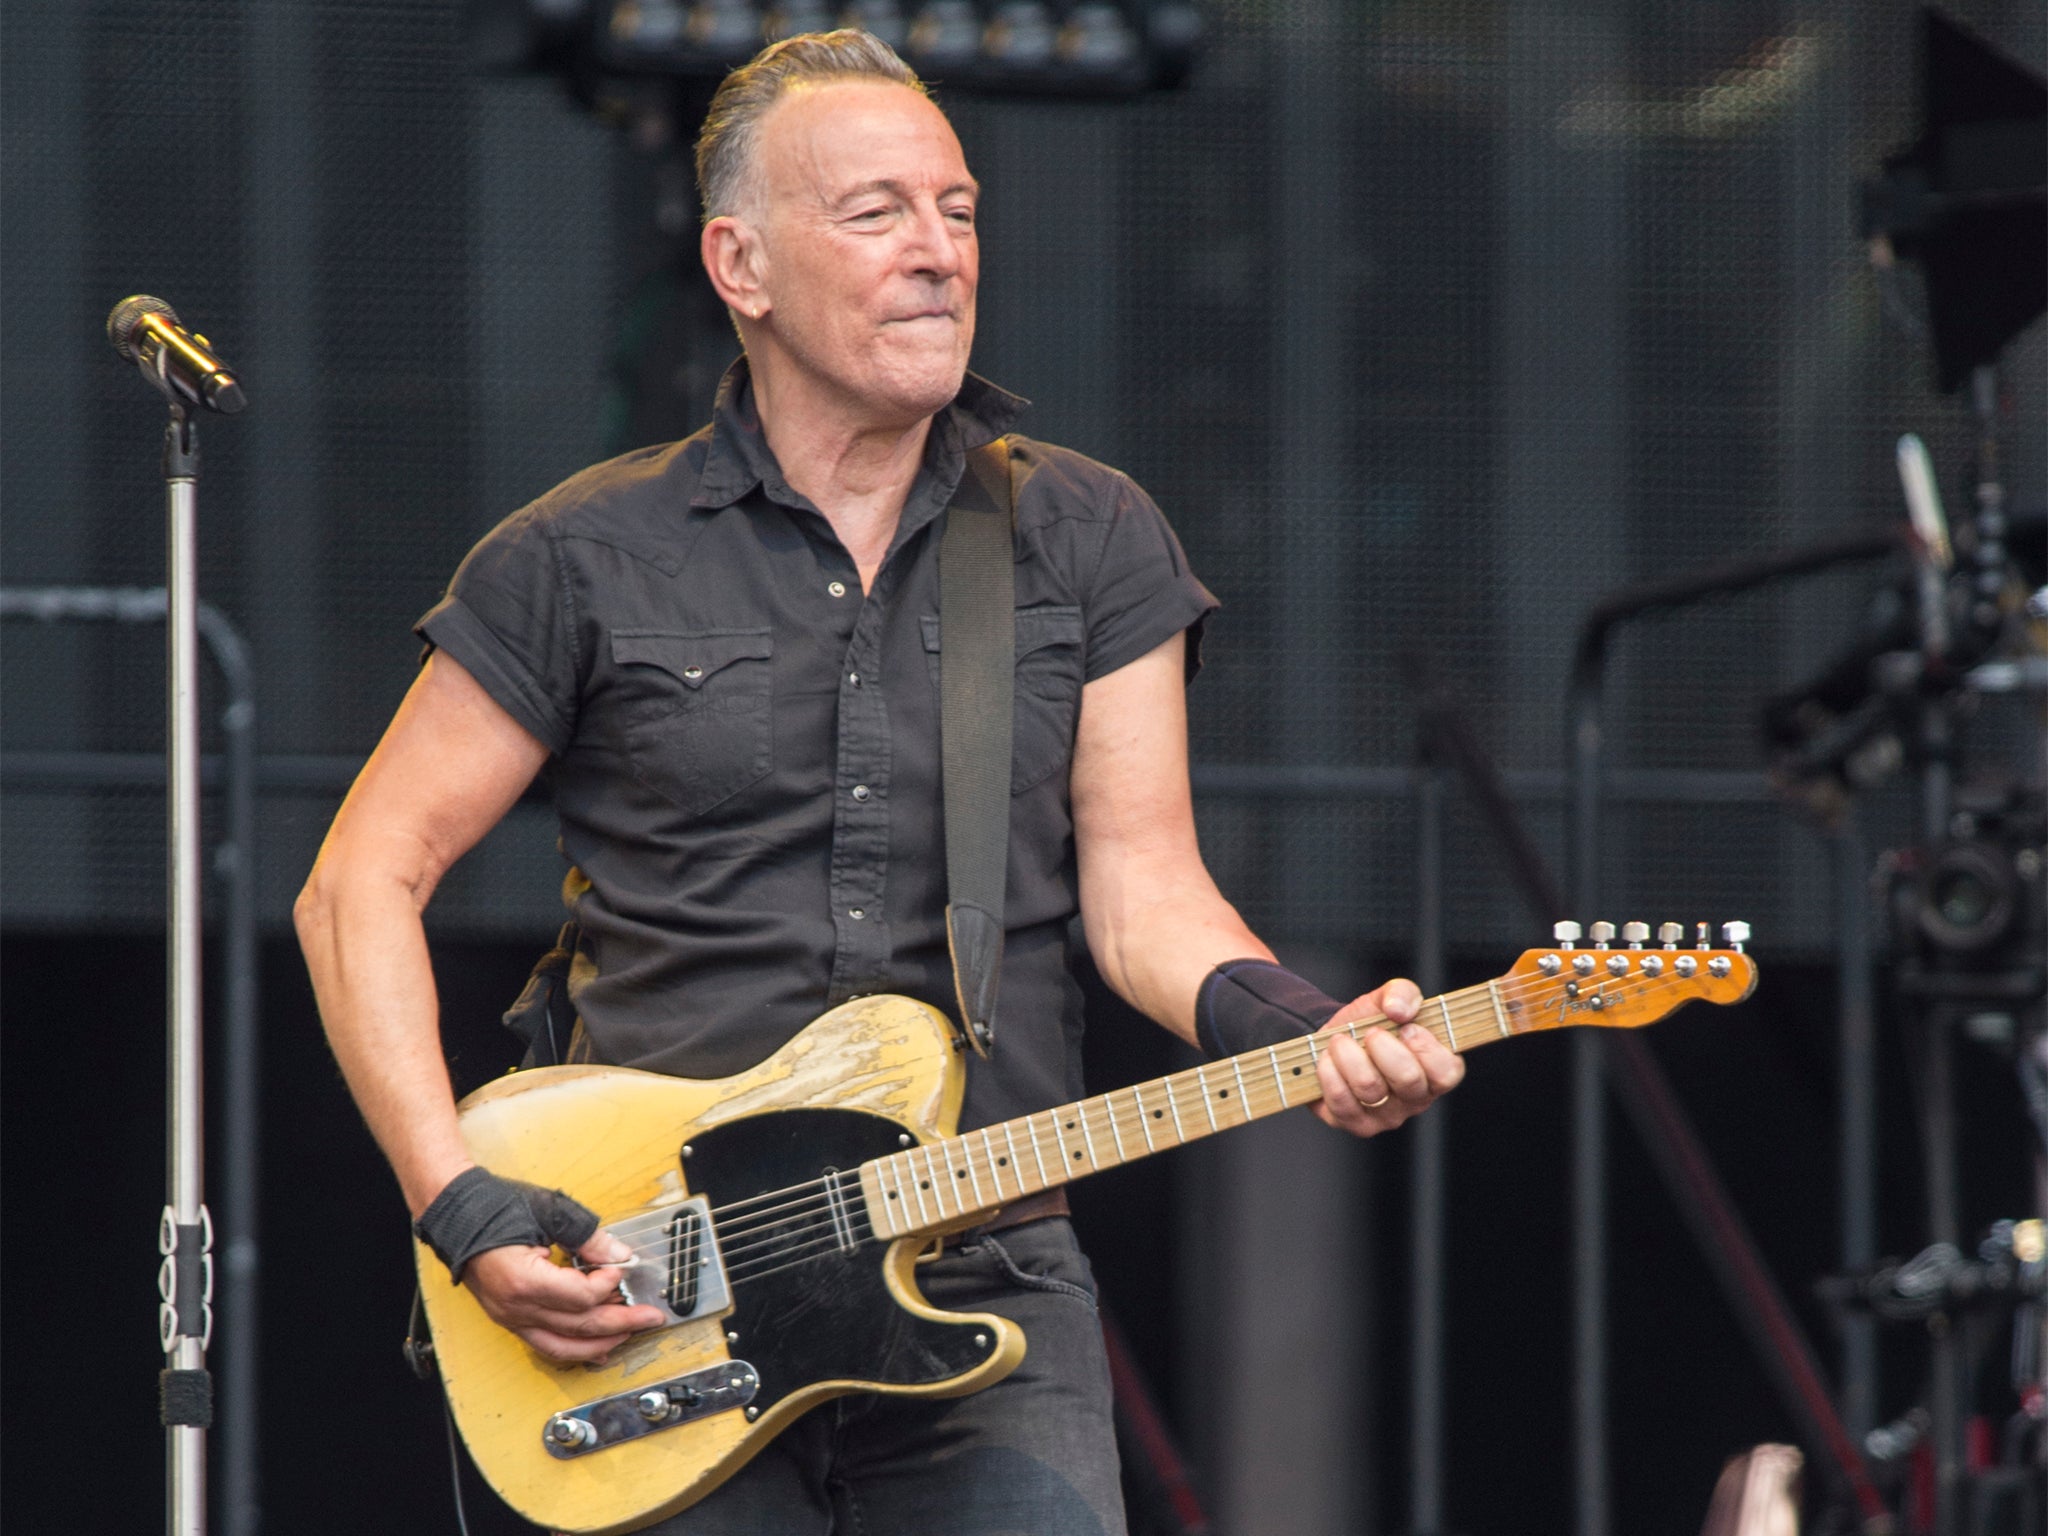 Bossing it: Bruce Springsteen performing at Villa Park on 16 June